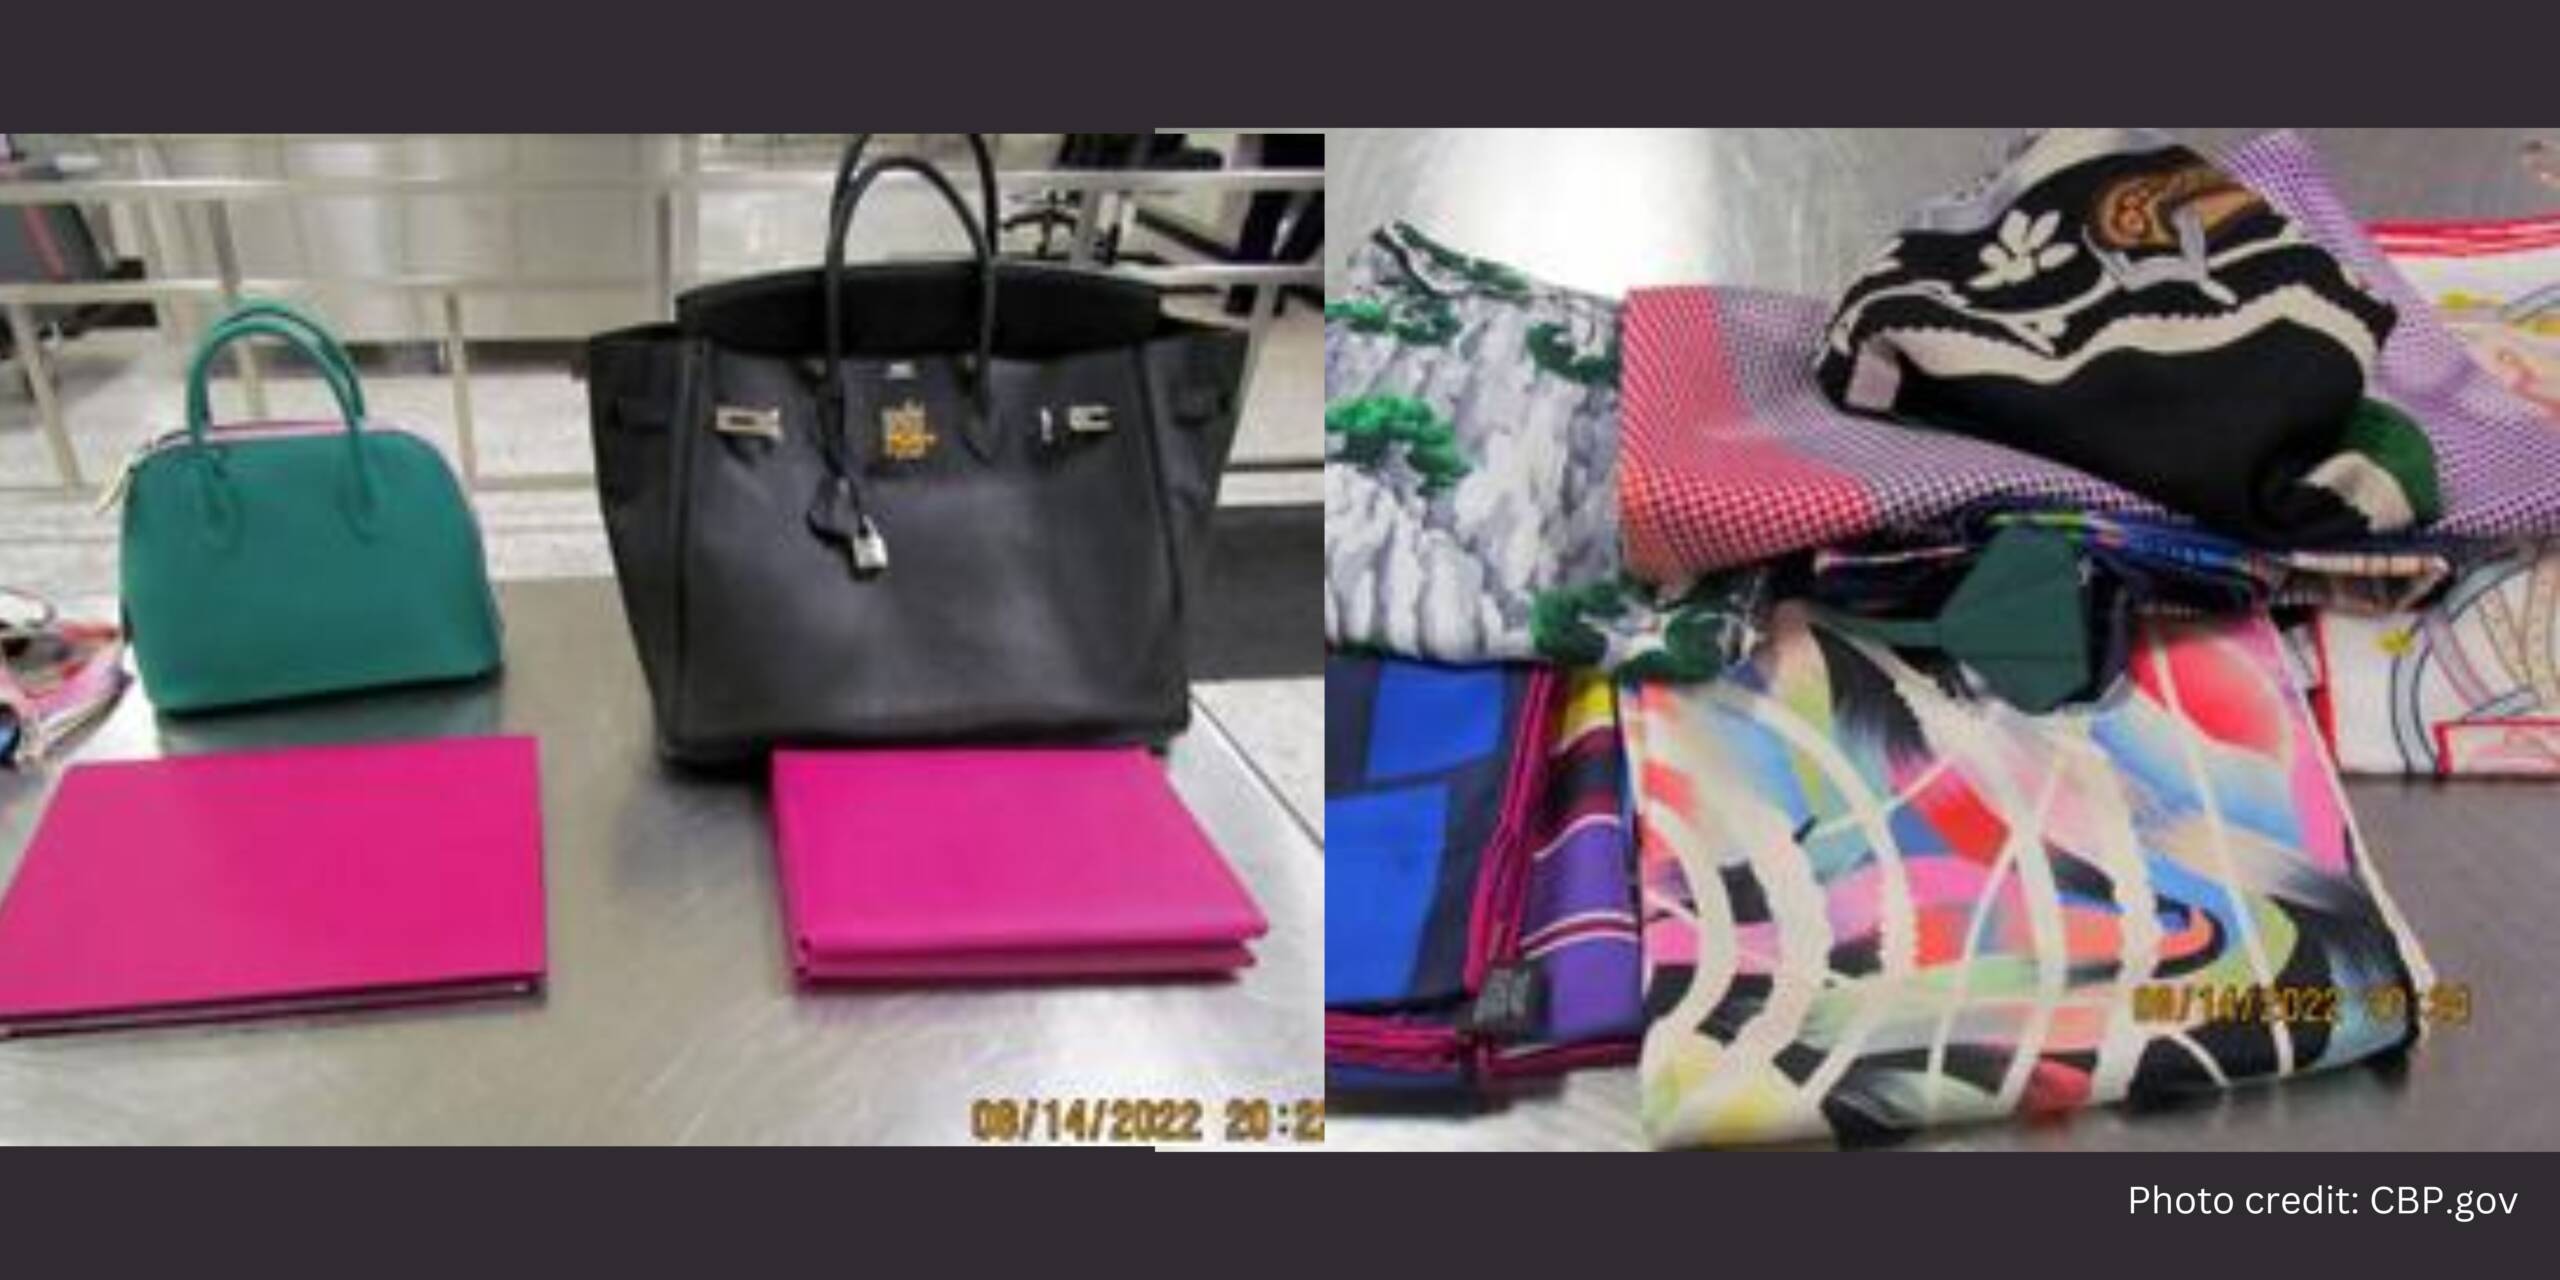 Denim Bags - Luxury's Latest Gem or Fashion Faux Pas? - PurseBop